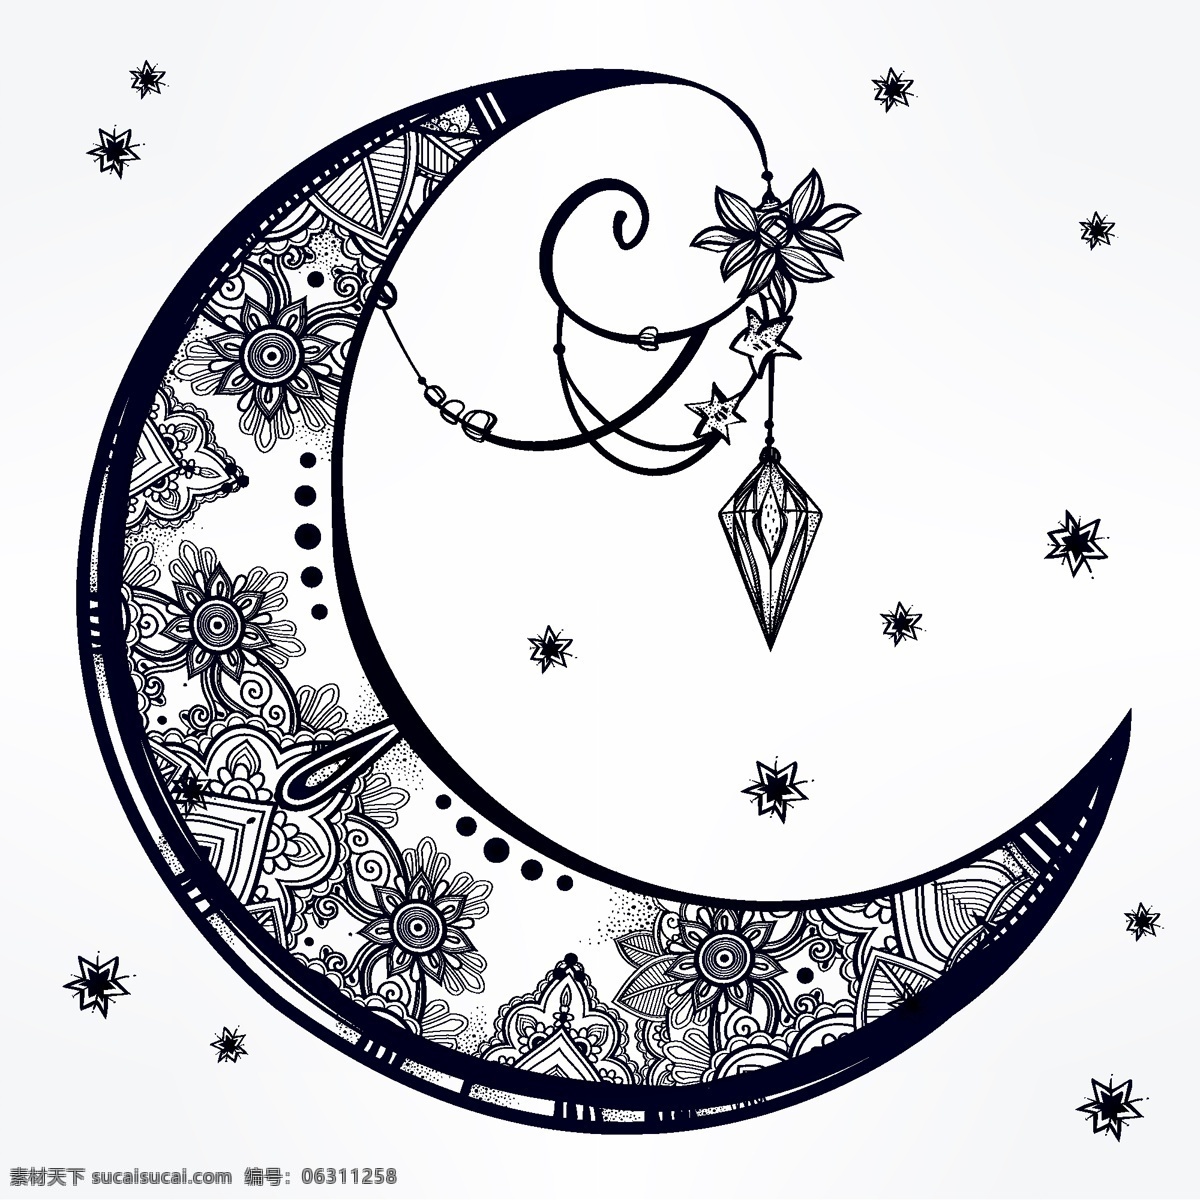 黑白 时尚 艺术 月亮 图案 唯美 星星 手绘